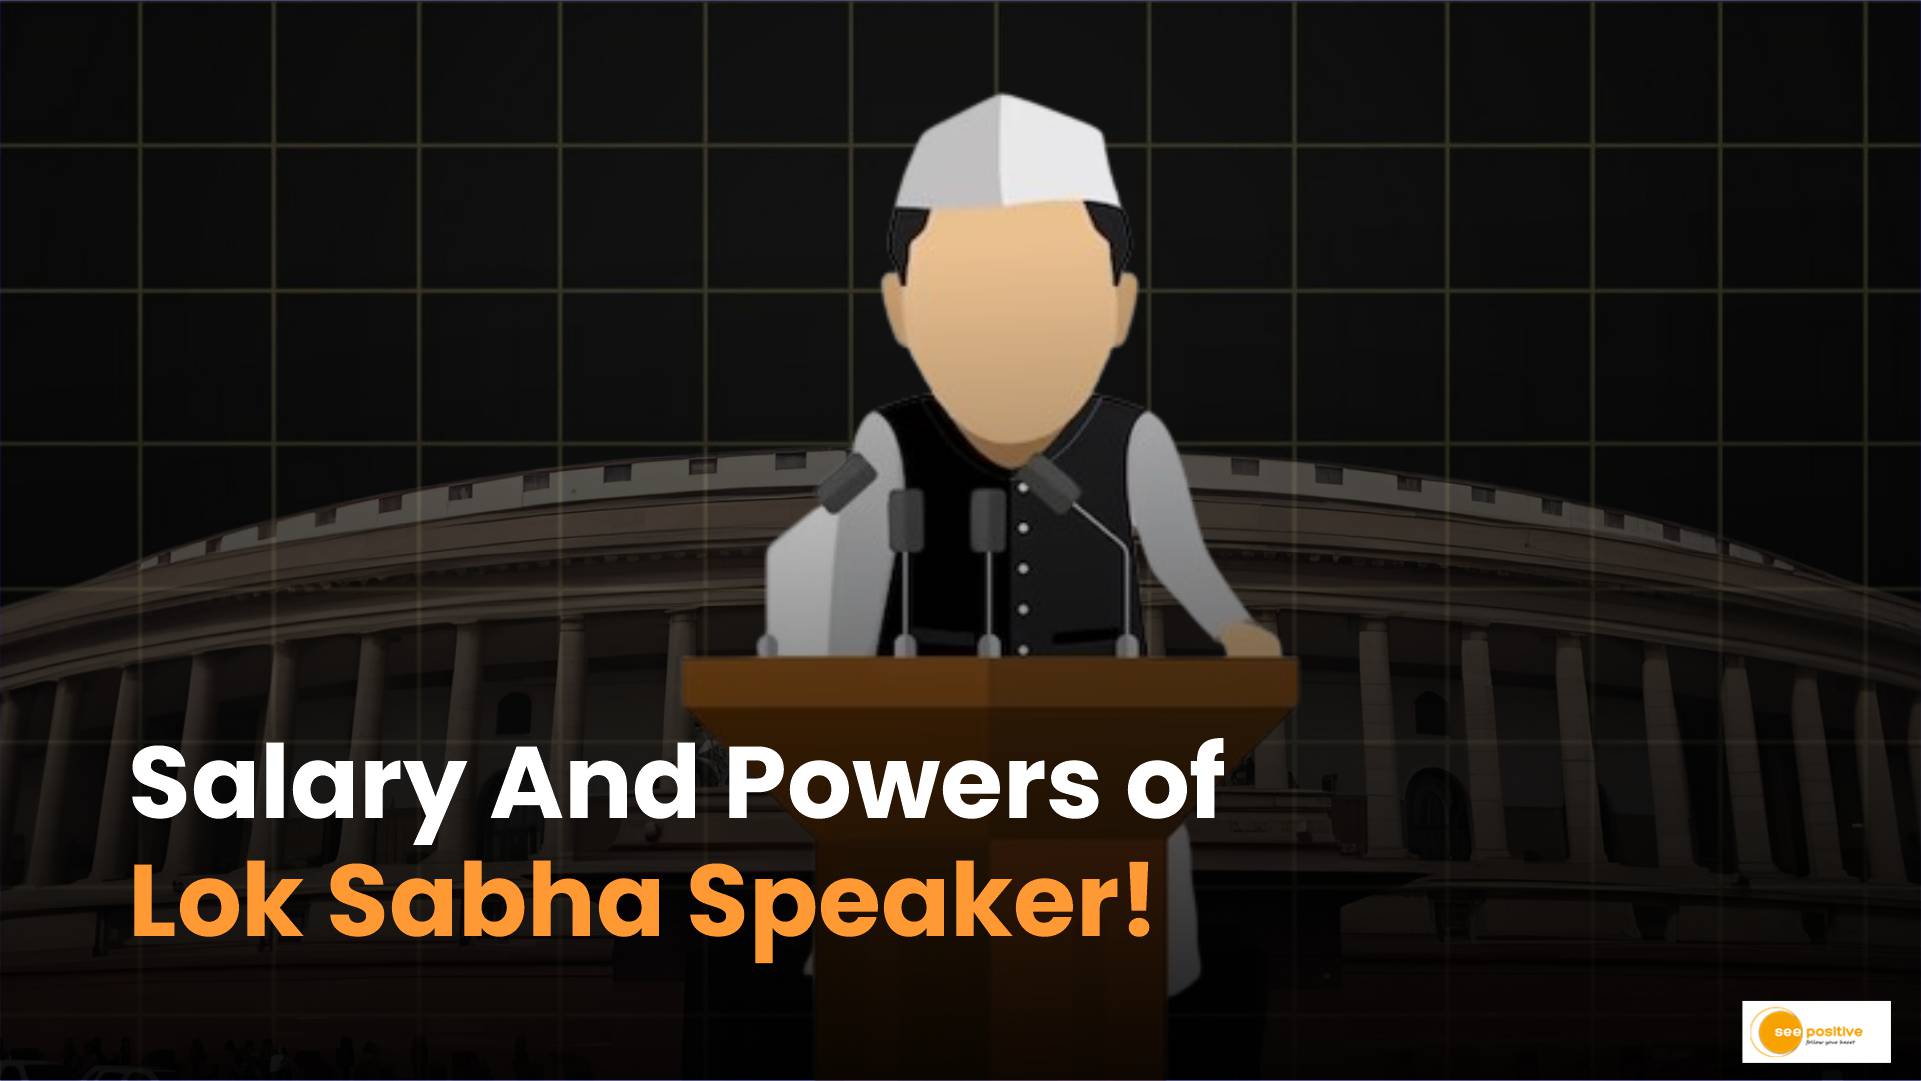 Lok Sabha Speaker